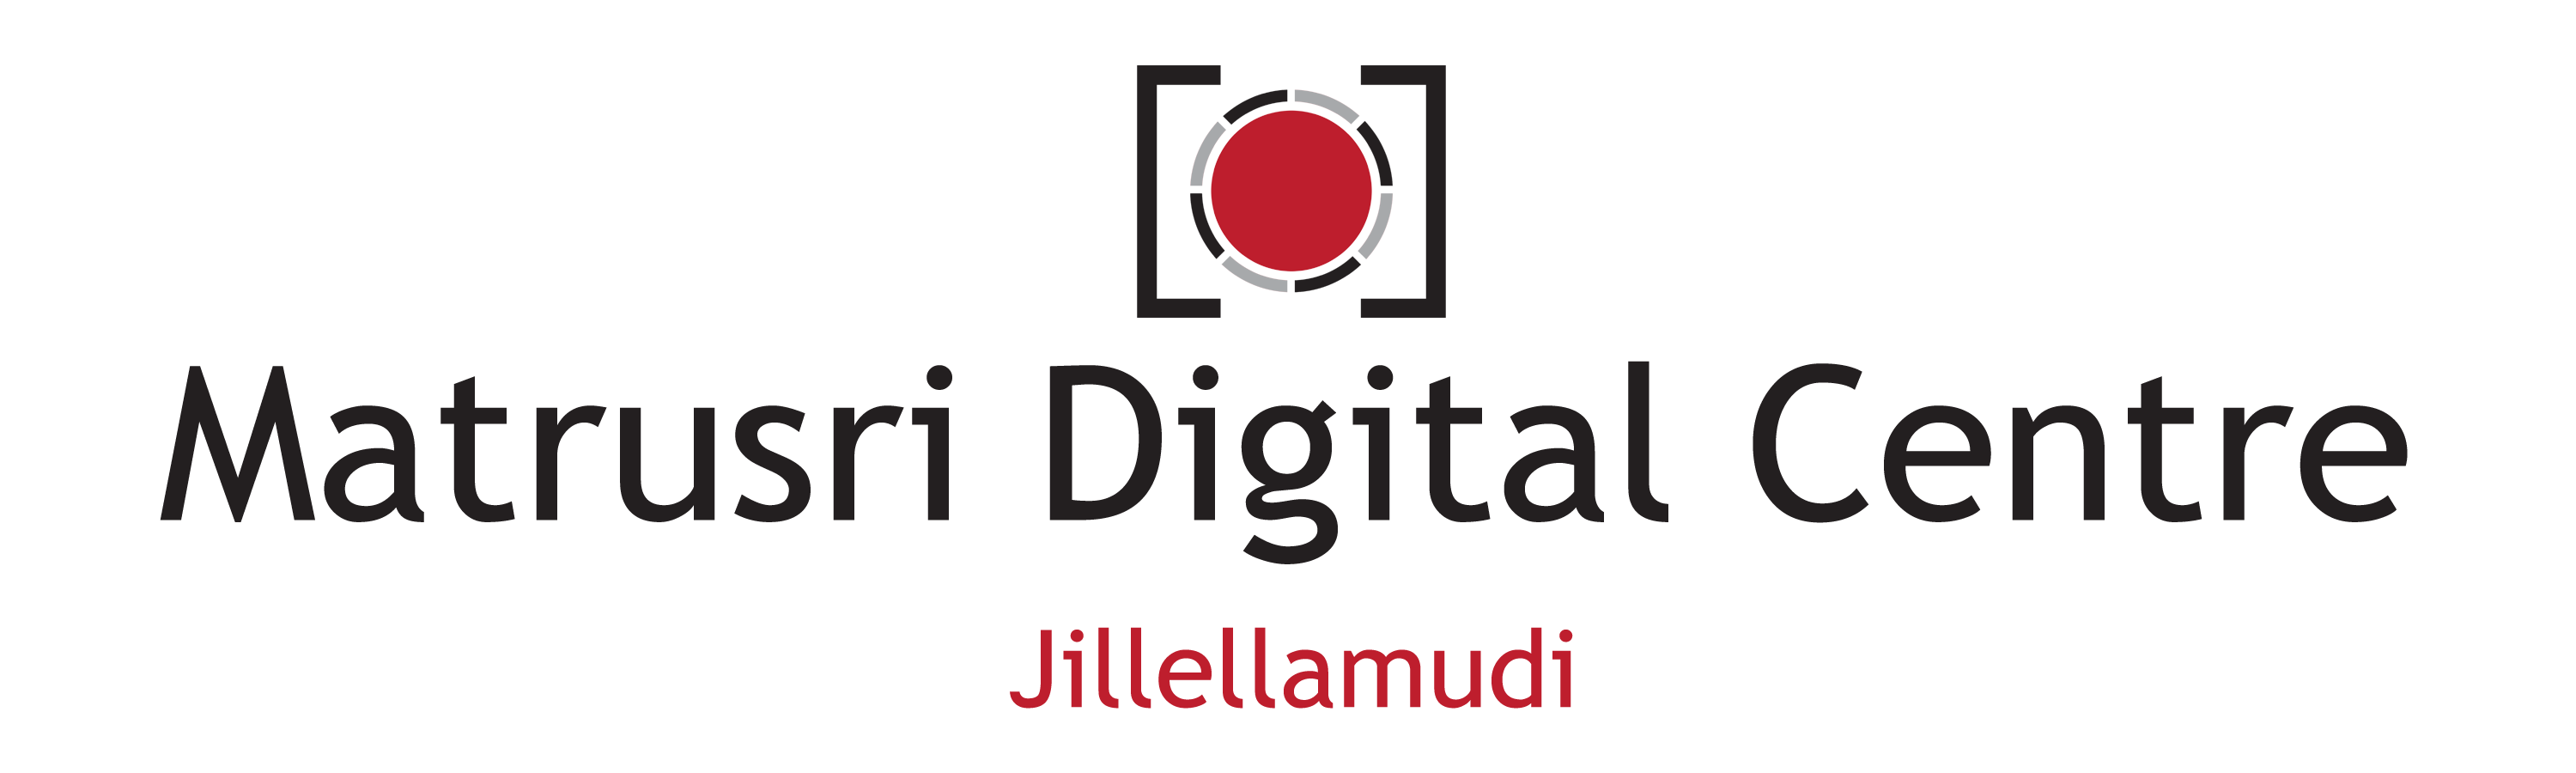 Matrusri Digital Centre - Jillellamudi